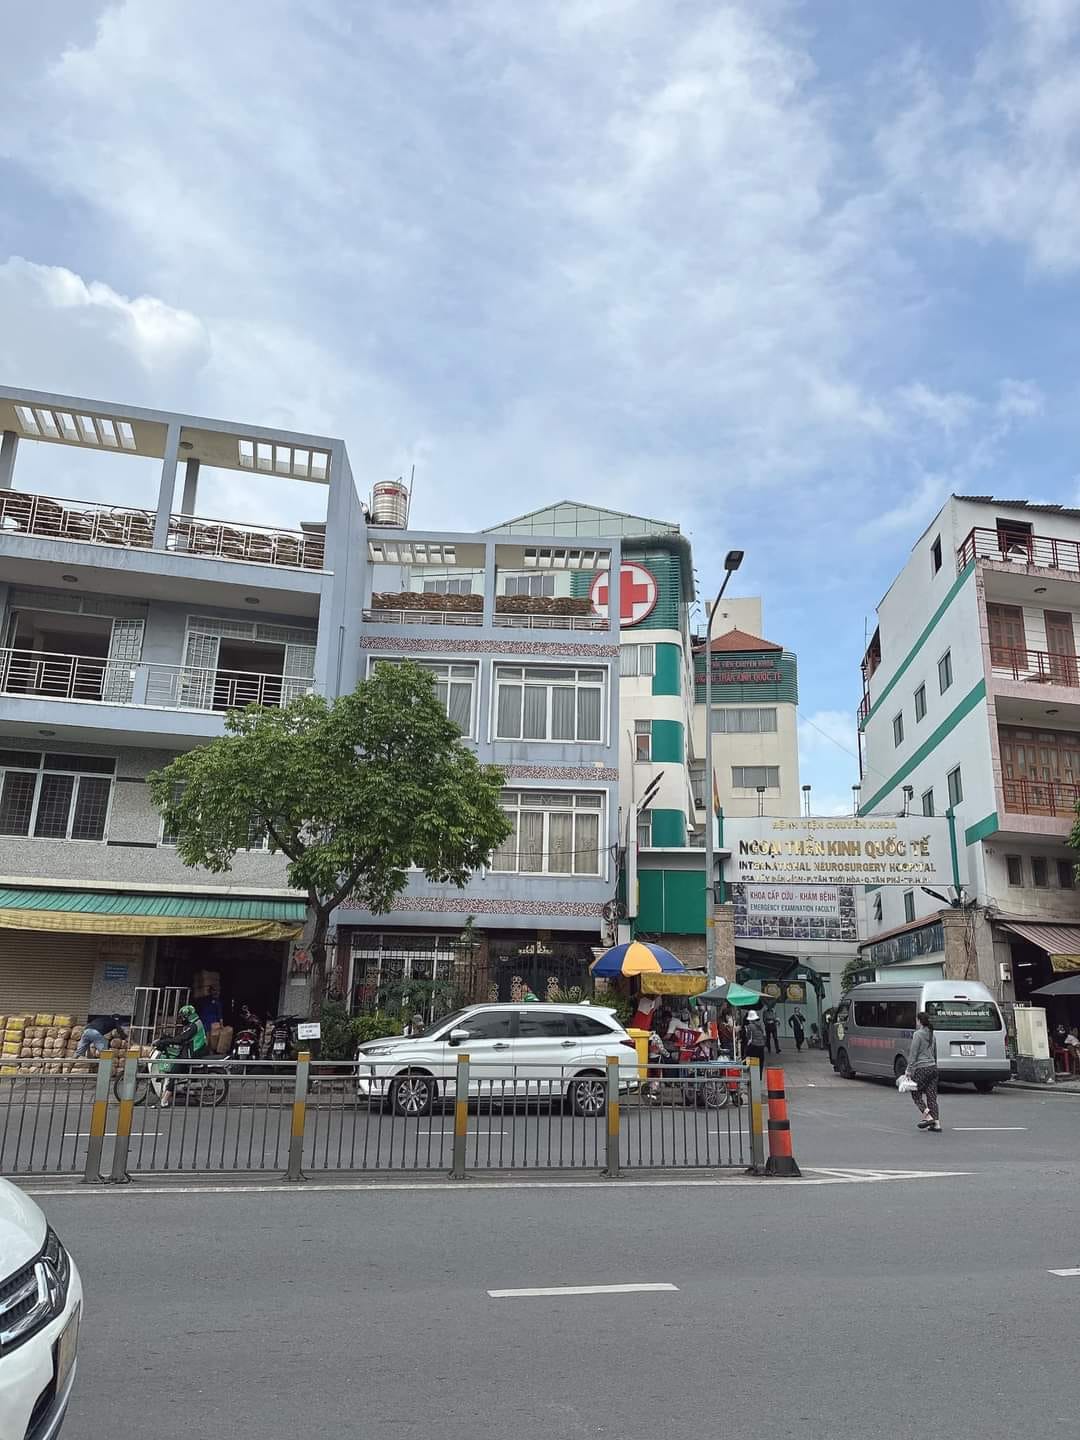 Bán nhà Mặt Tiền Lũy Bán Bích - TT.Hòa - Tân Phú - Kinh doanh đỉnh - 95m2( 4,6mx22m) - Giá 15 tỷ 1